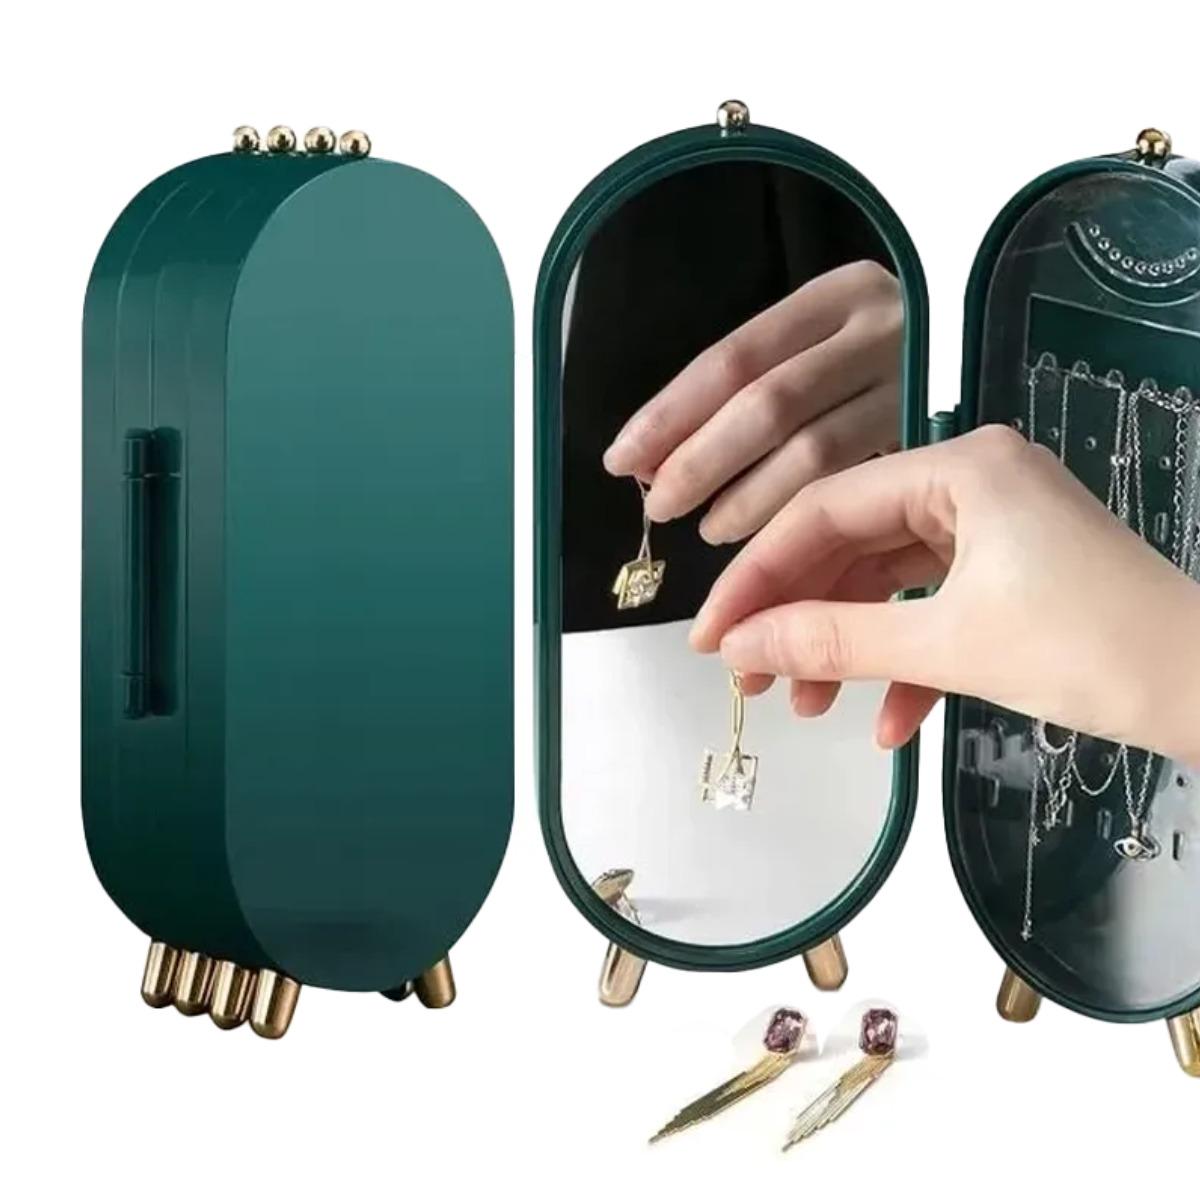 Шкатулка с зеркалом Jewelry Storage Box для хранения ювелирных украшений - фото 4